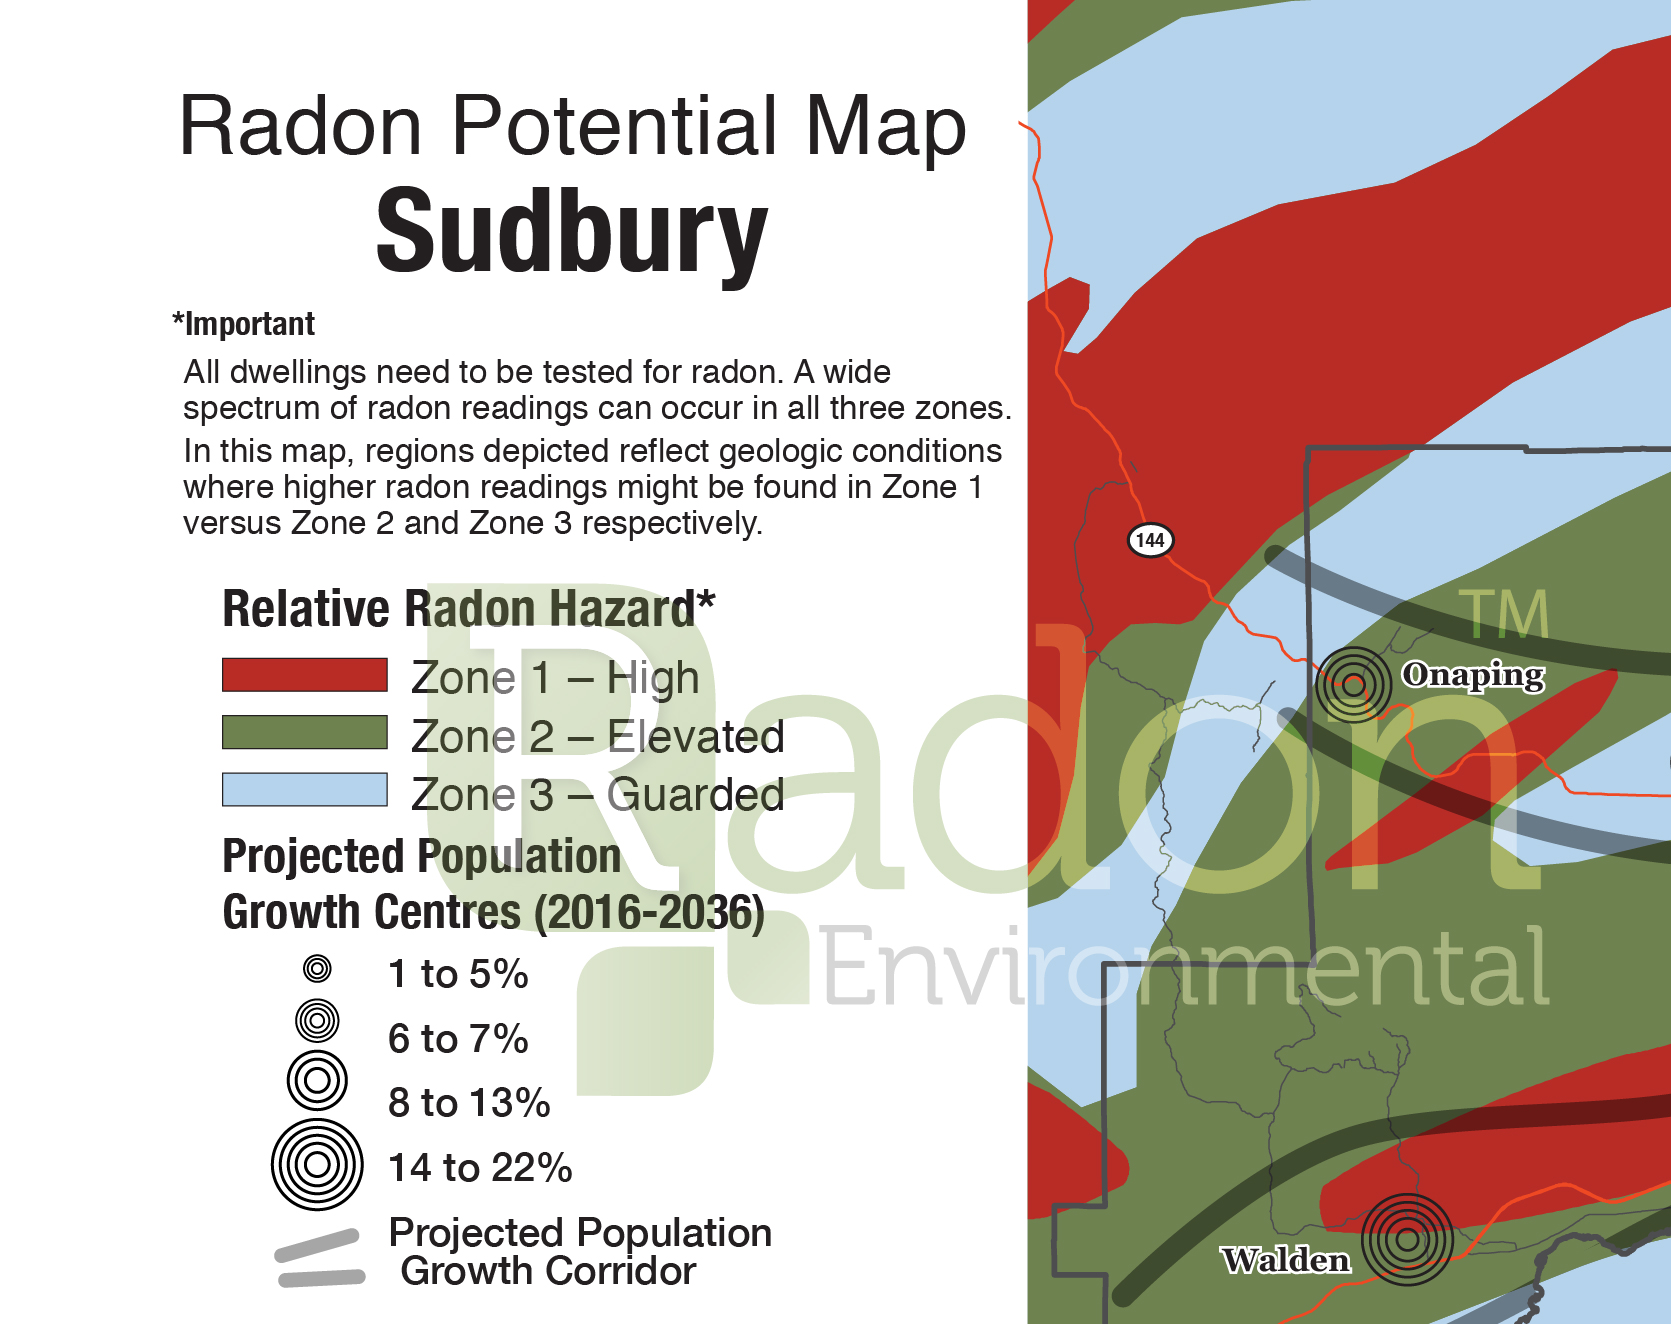 Radon Potential Map of Sudbury.